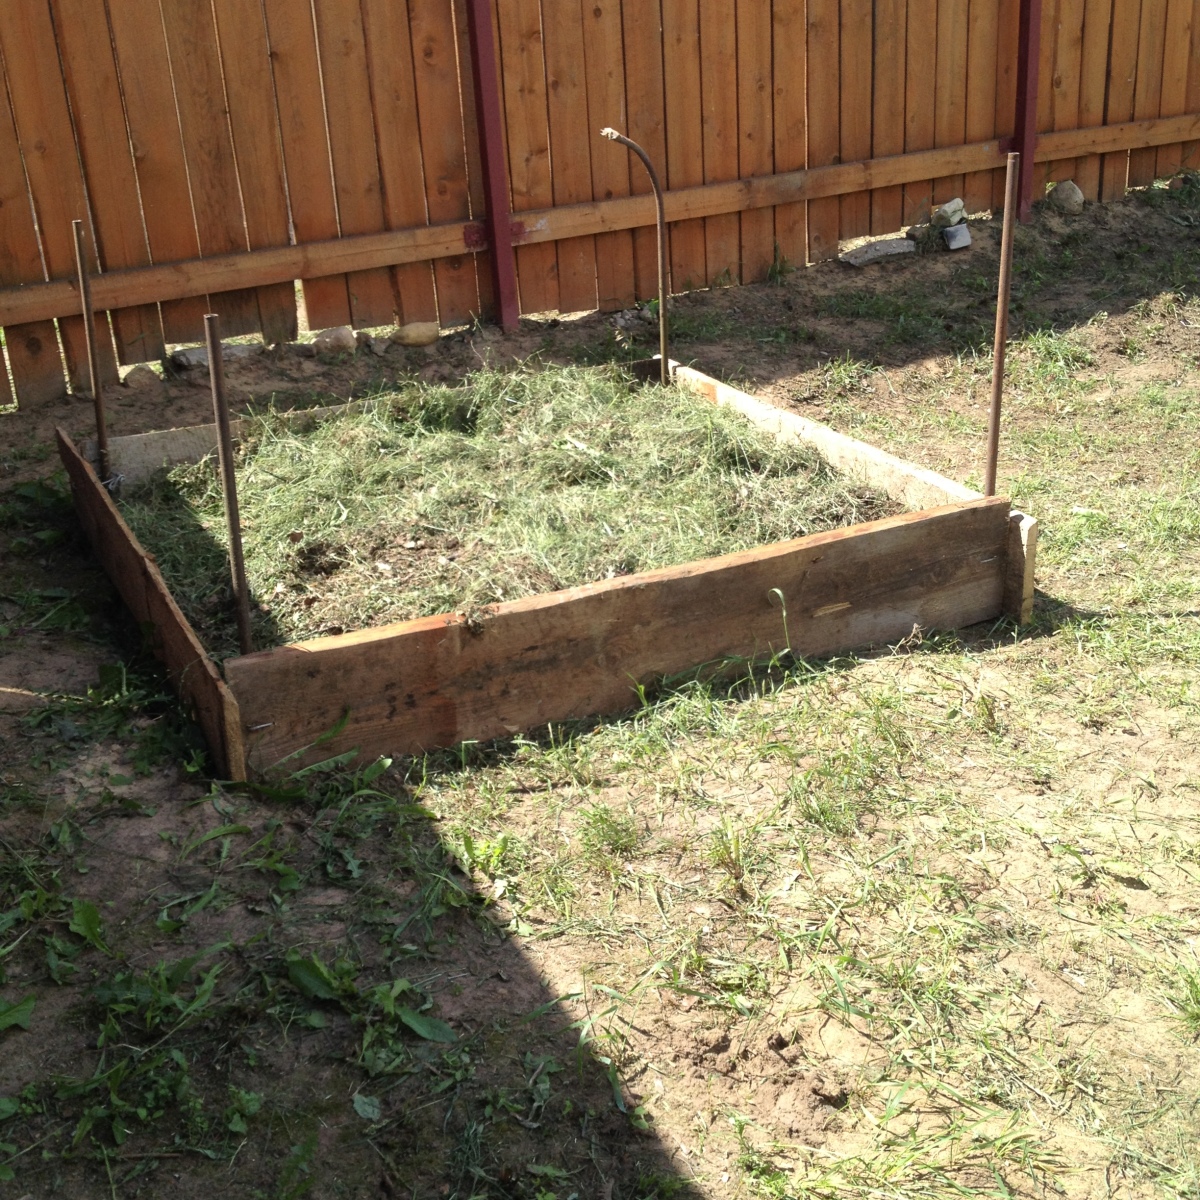 Решили сделать компостную яму и оказались правы - все лето в нее складывали скошенную траву и сорняки, обильно поливая водой. В итоге высота компоста составила всего около 30 см